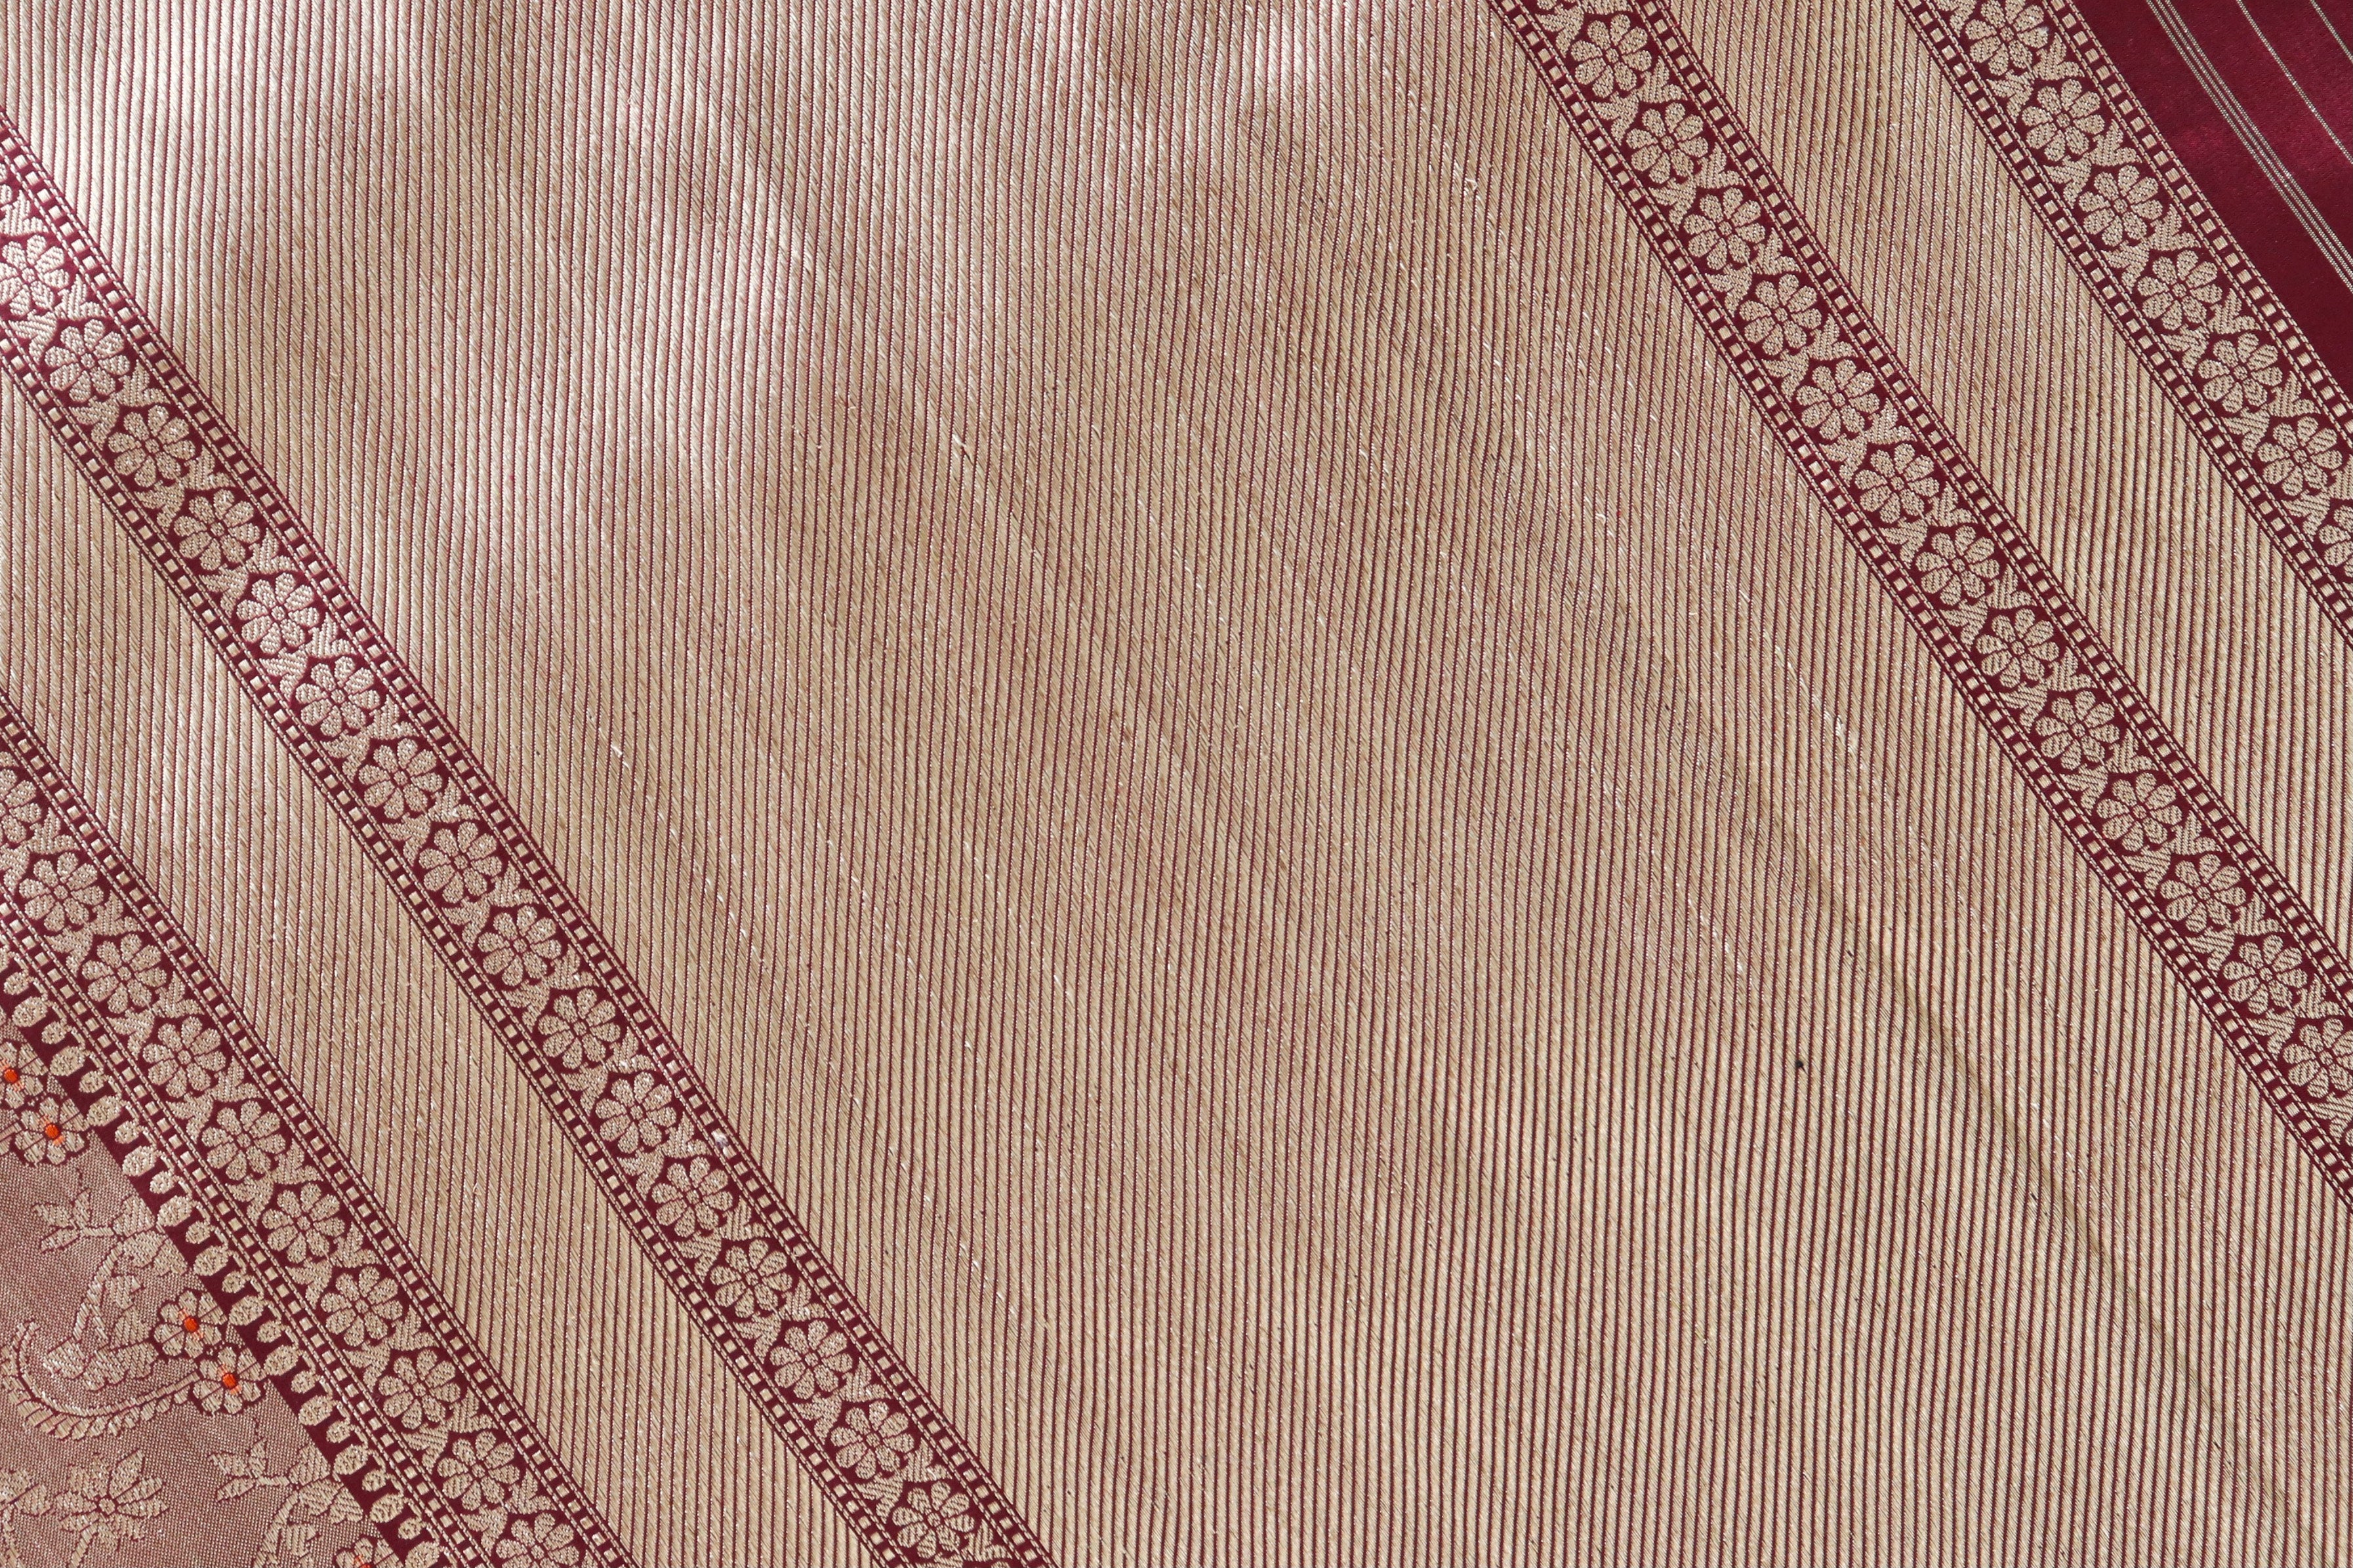 Maroon Meenadar Tanchoi Pure Silk Handloom Banarasi Saree